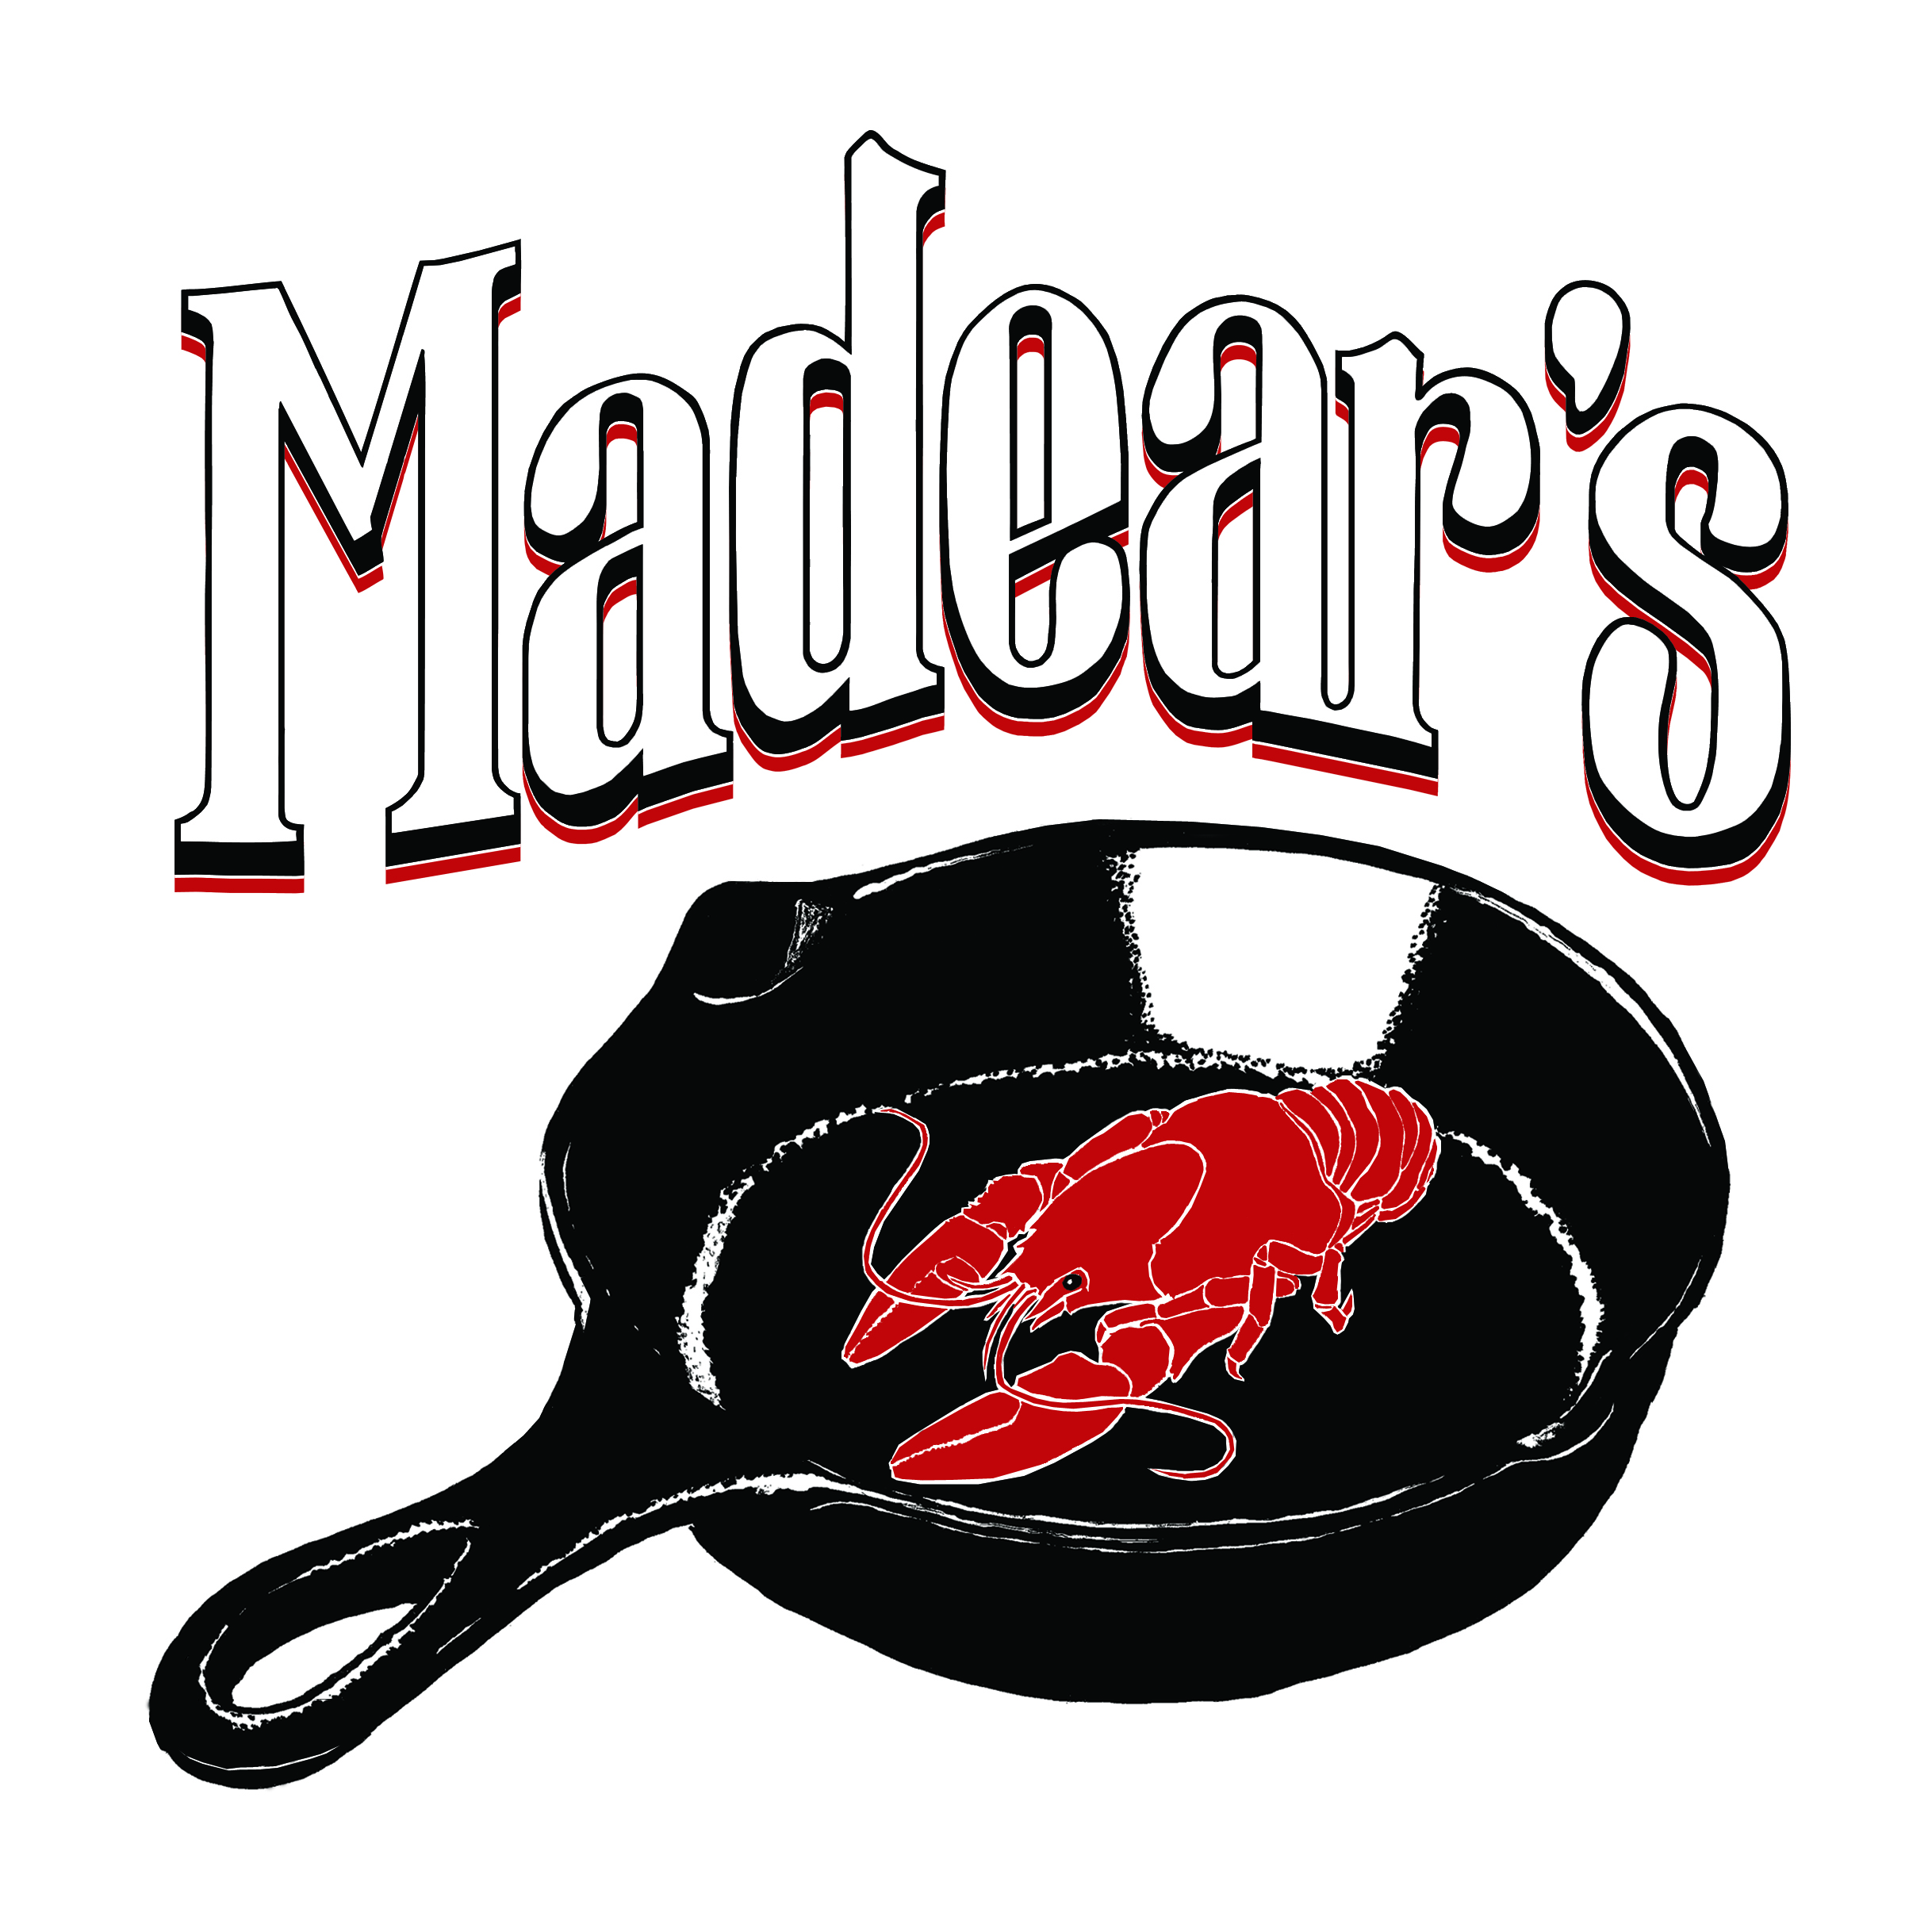 Madear's LLC